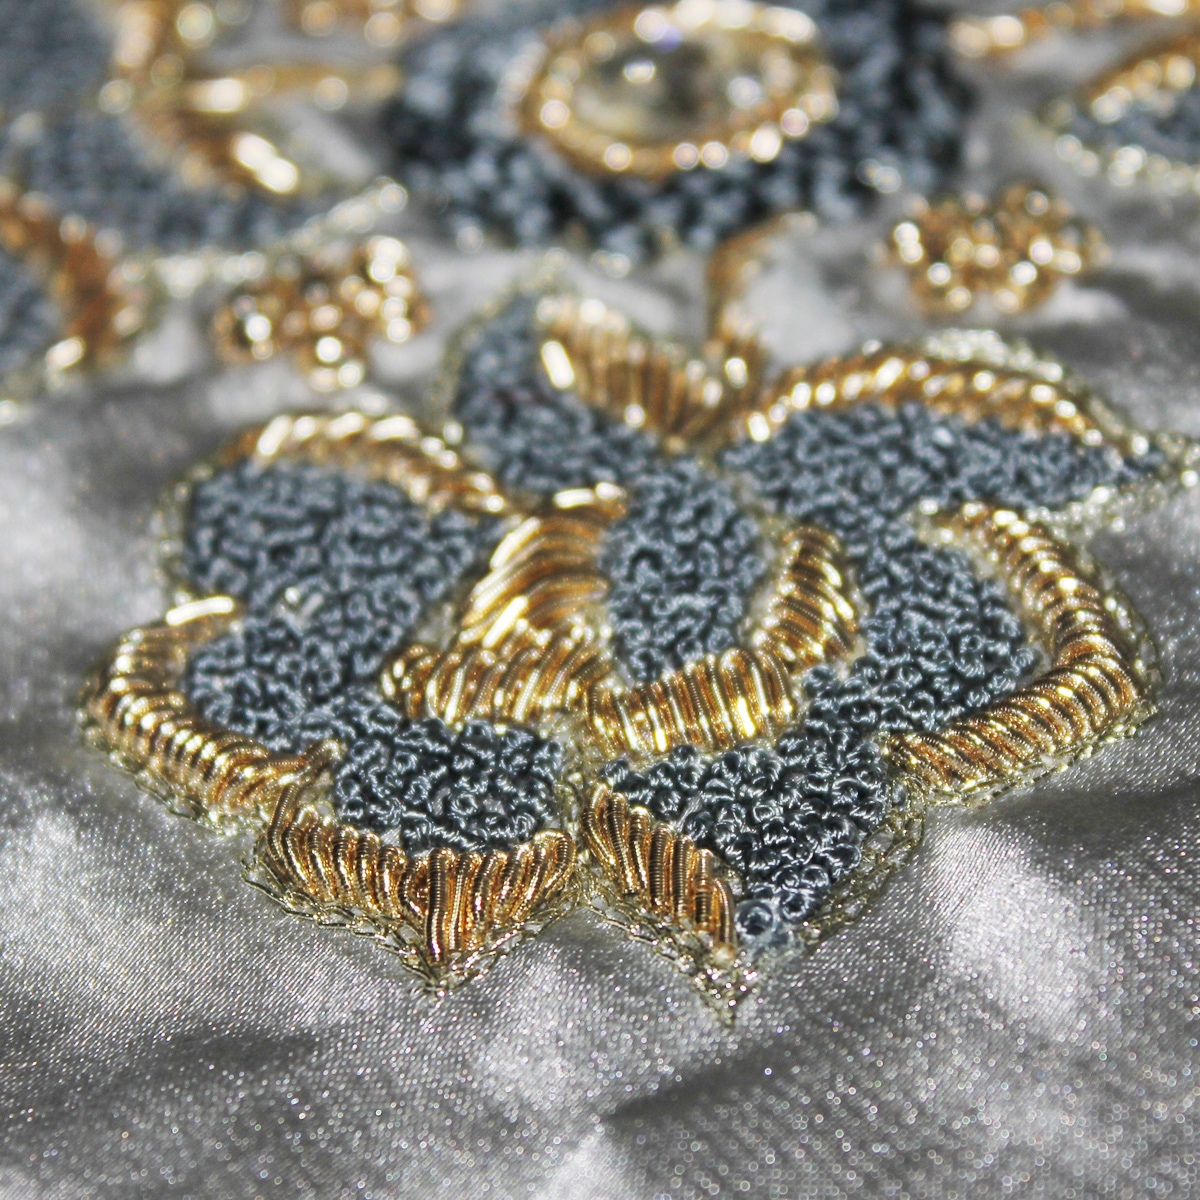 Turkish Embroidery Patterns Zardozi Wikipedia